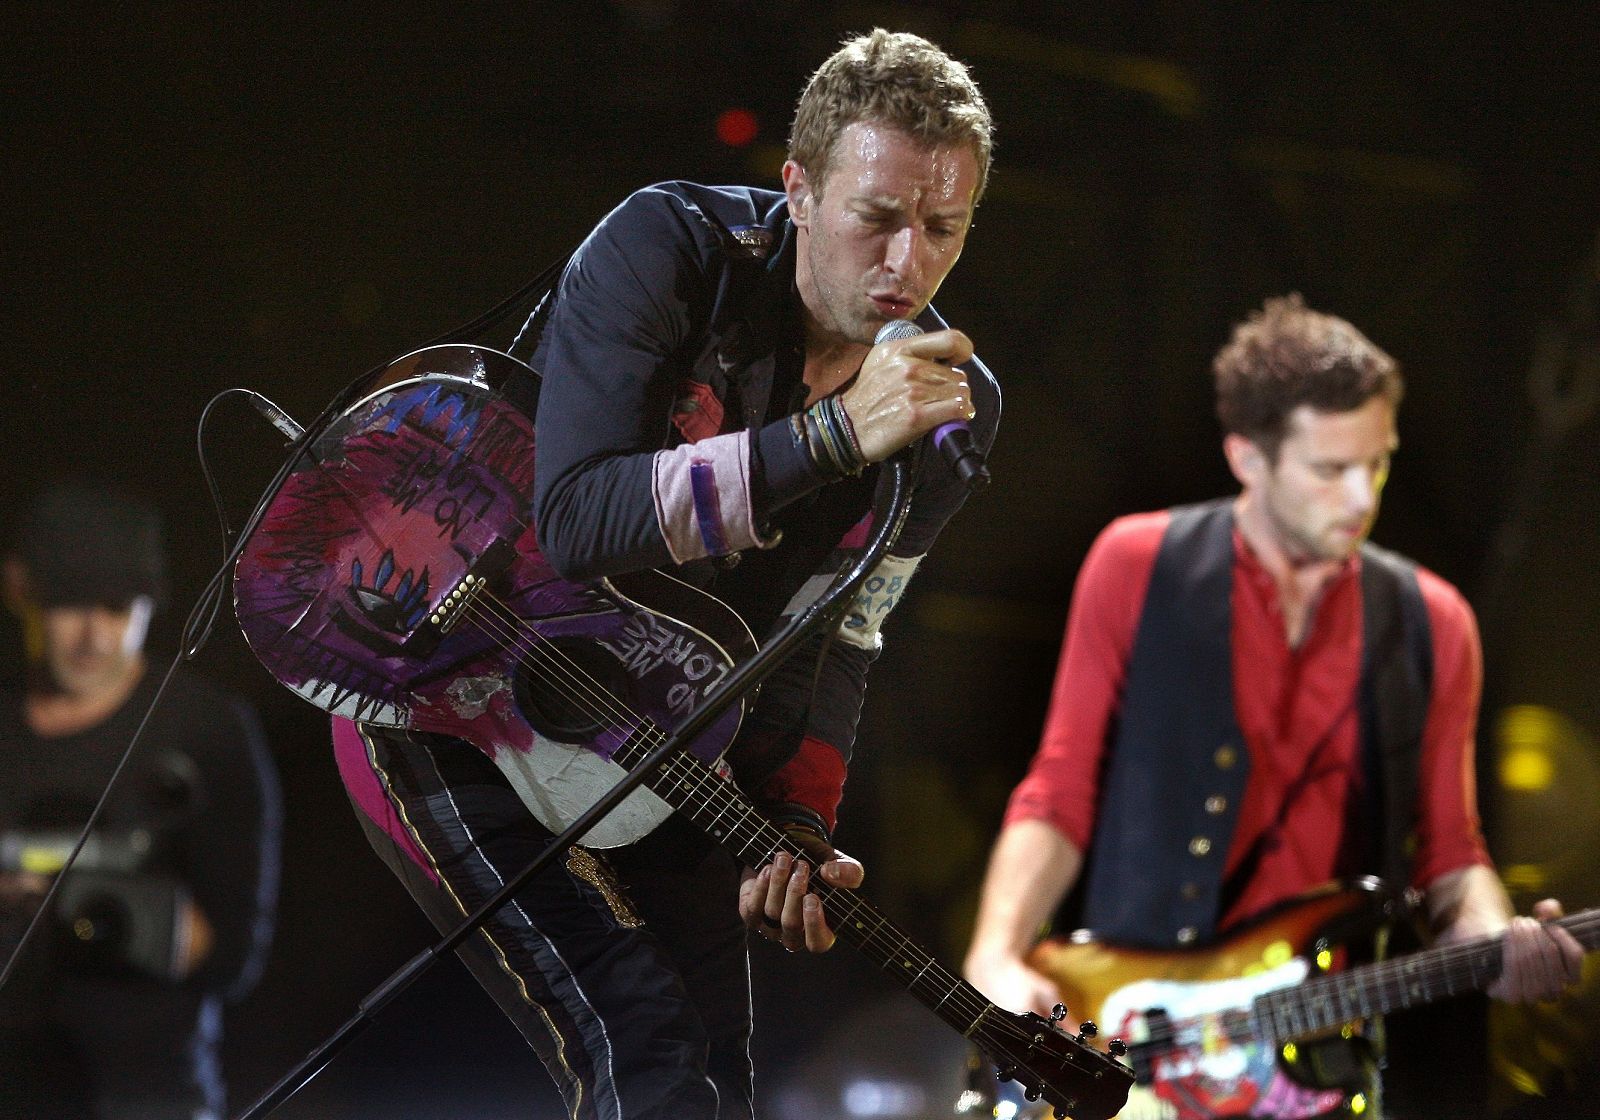 El concierto de Coldplay en imágenes